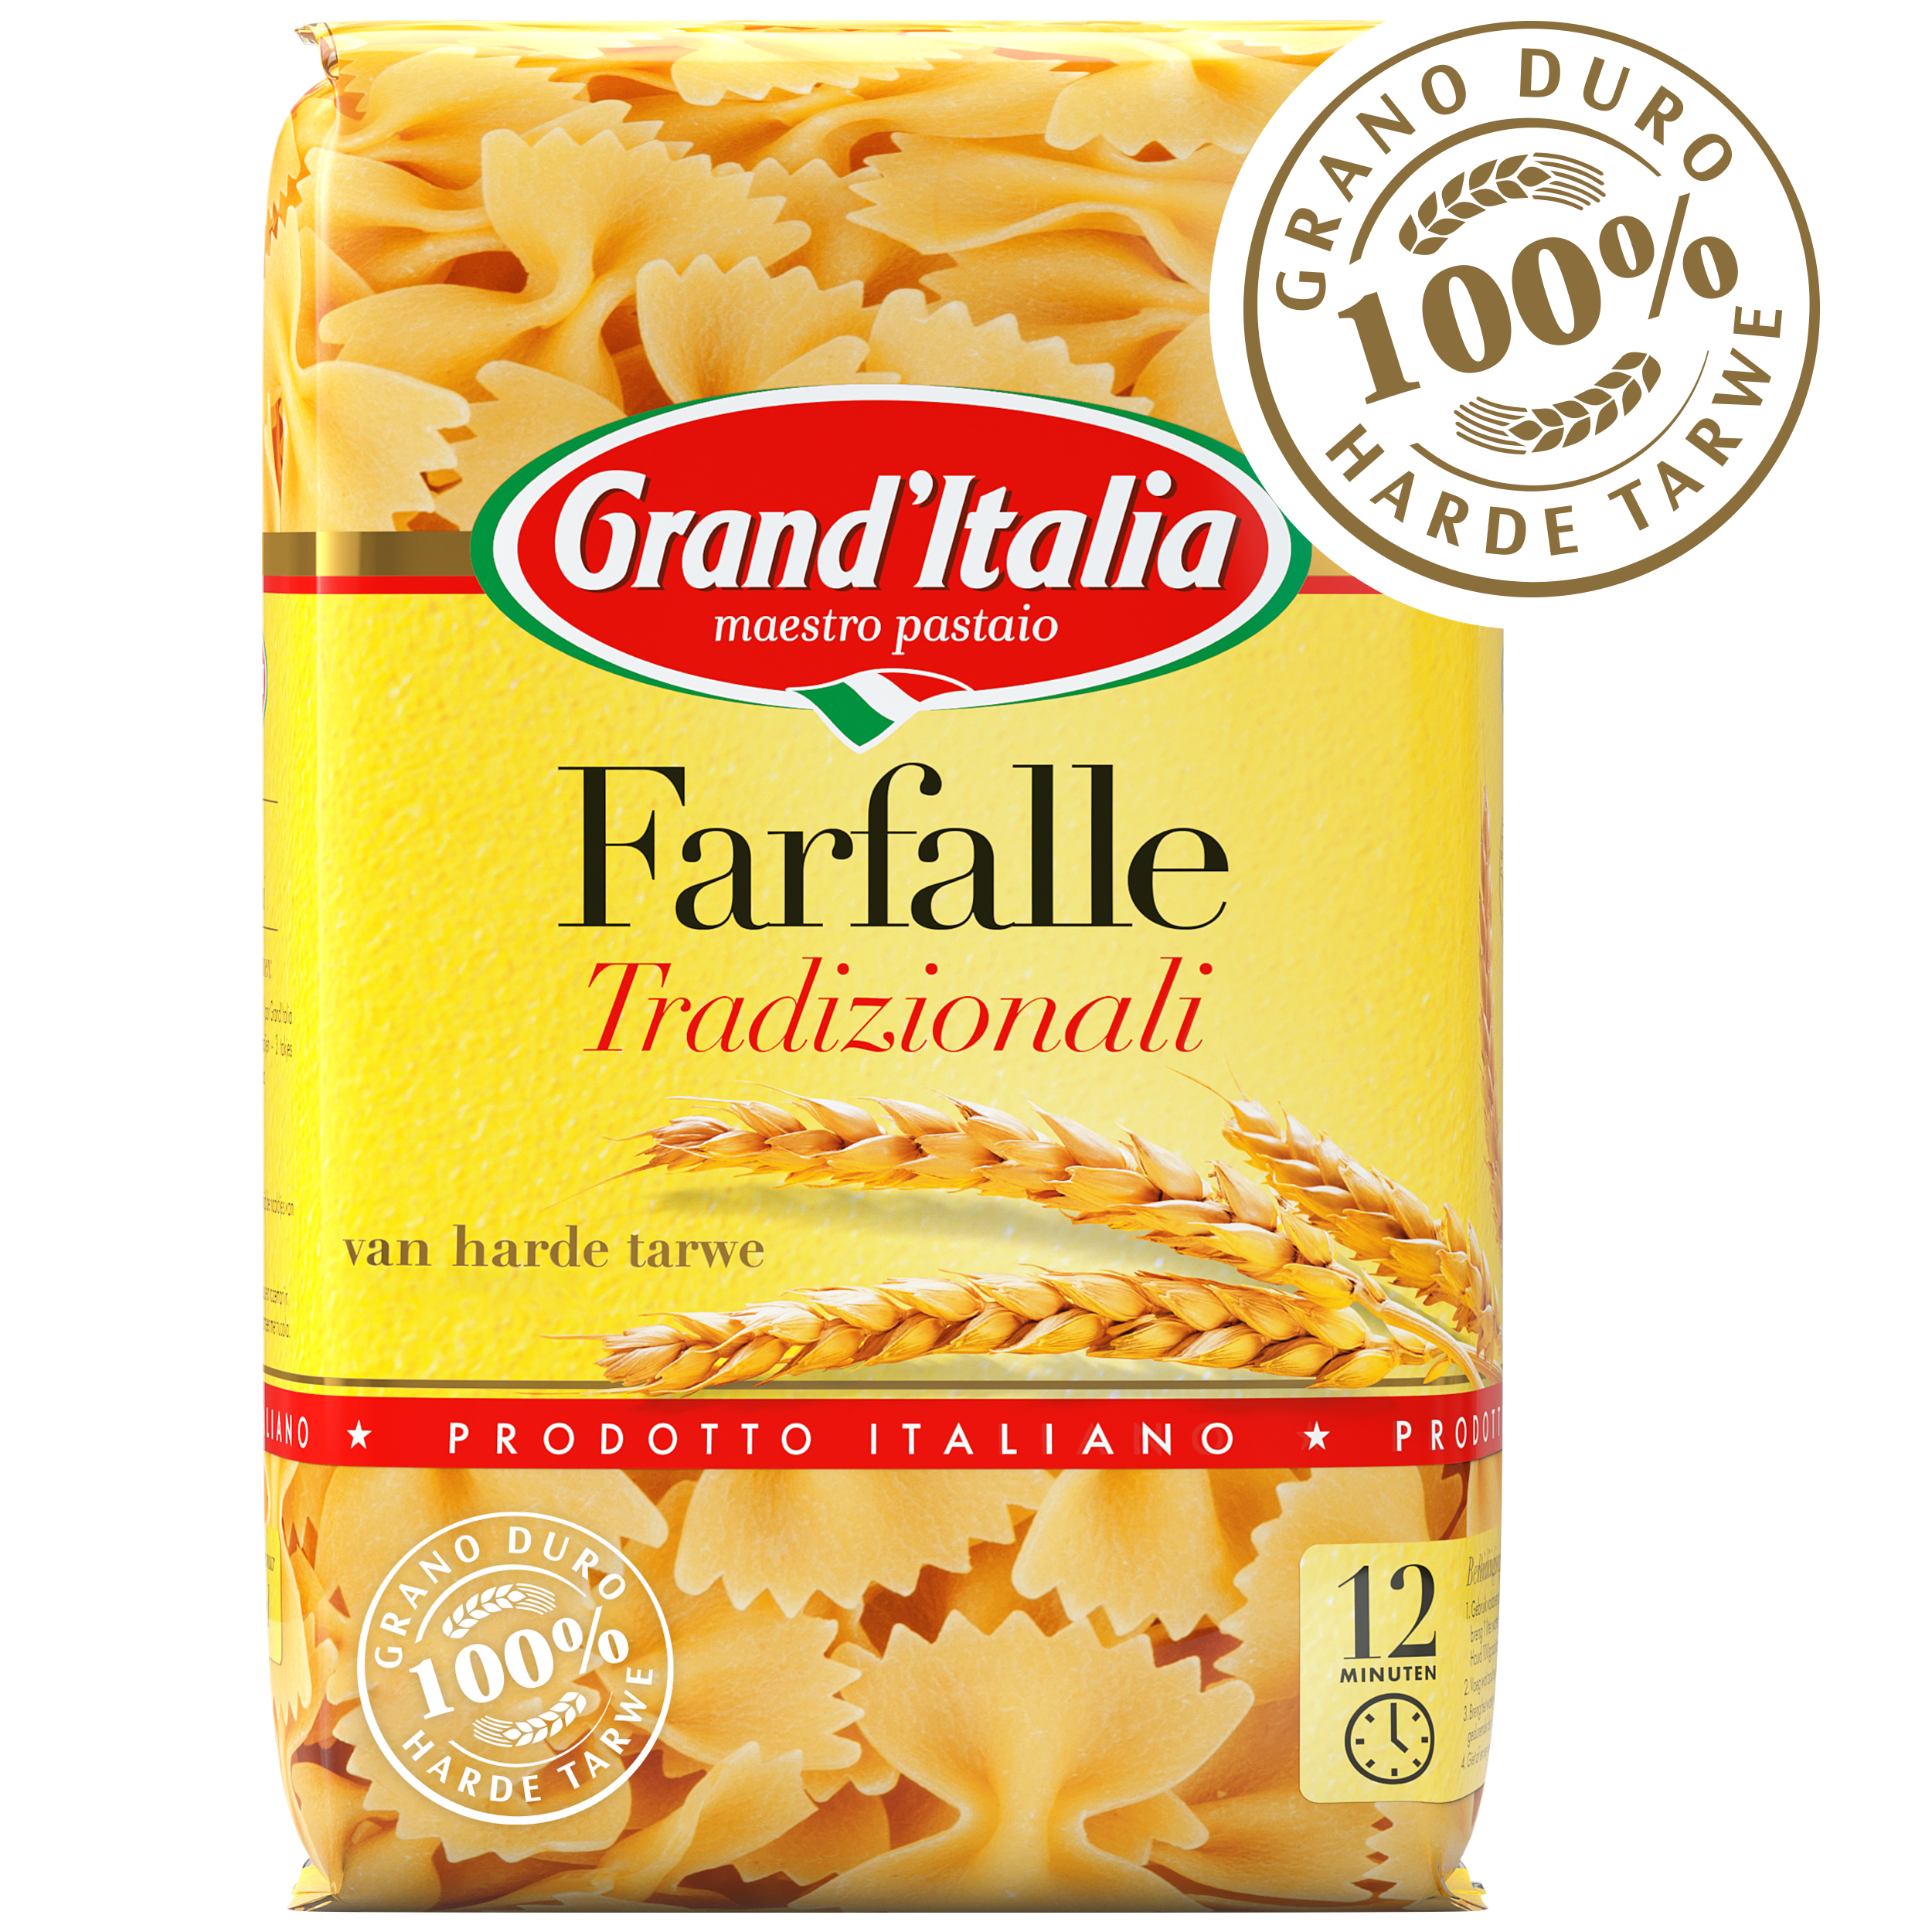 Pasta Farfalle Tradizionali 500g claim Grand'Italia